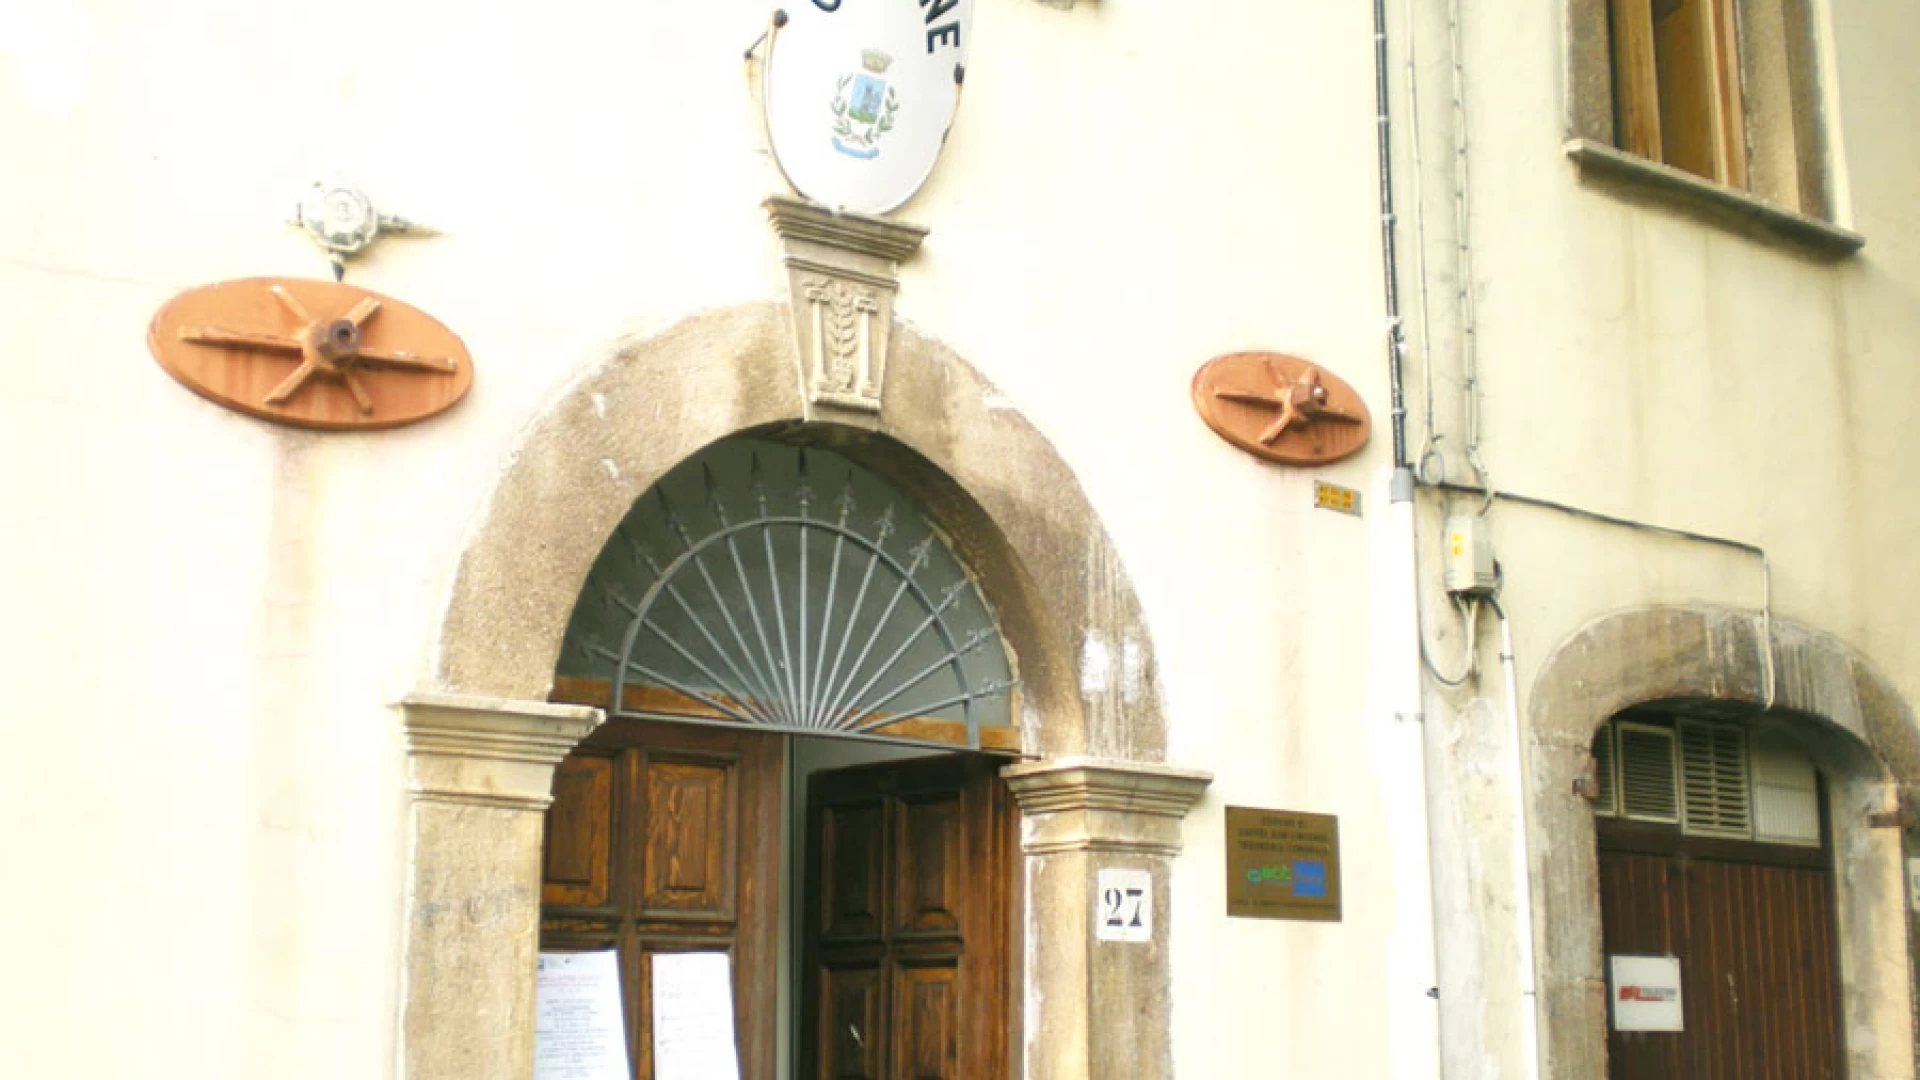 Castel San Vincenzo: Amelia Iannotta diffida il sindaco Domenico Di Cicco. “E’ interdetto dai pubblici uffici e omette la sentenza con il suo fare”. Così la consigliere di opposizione.